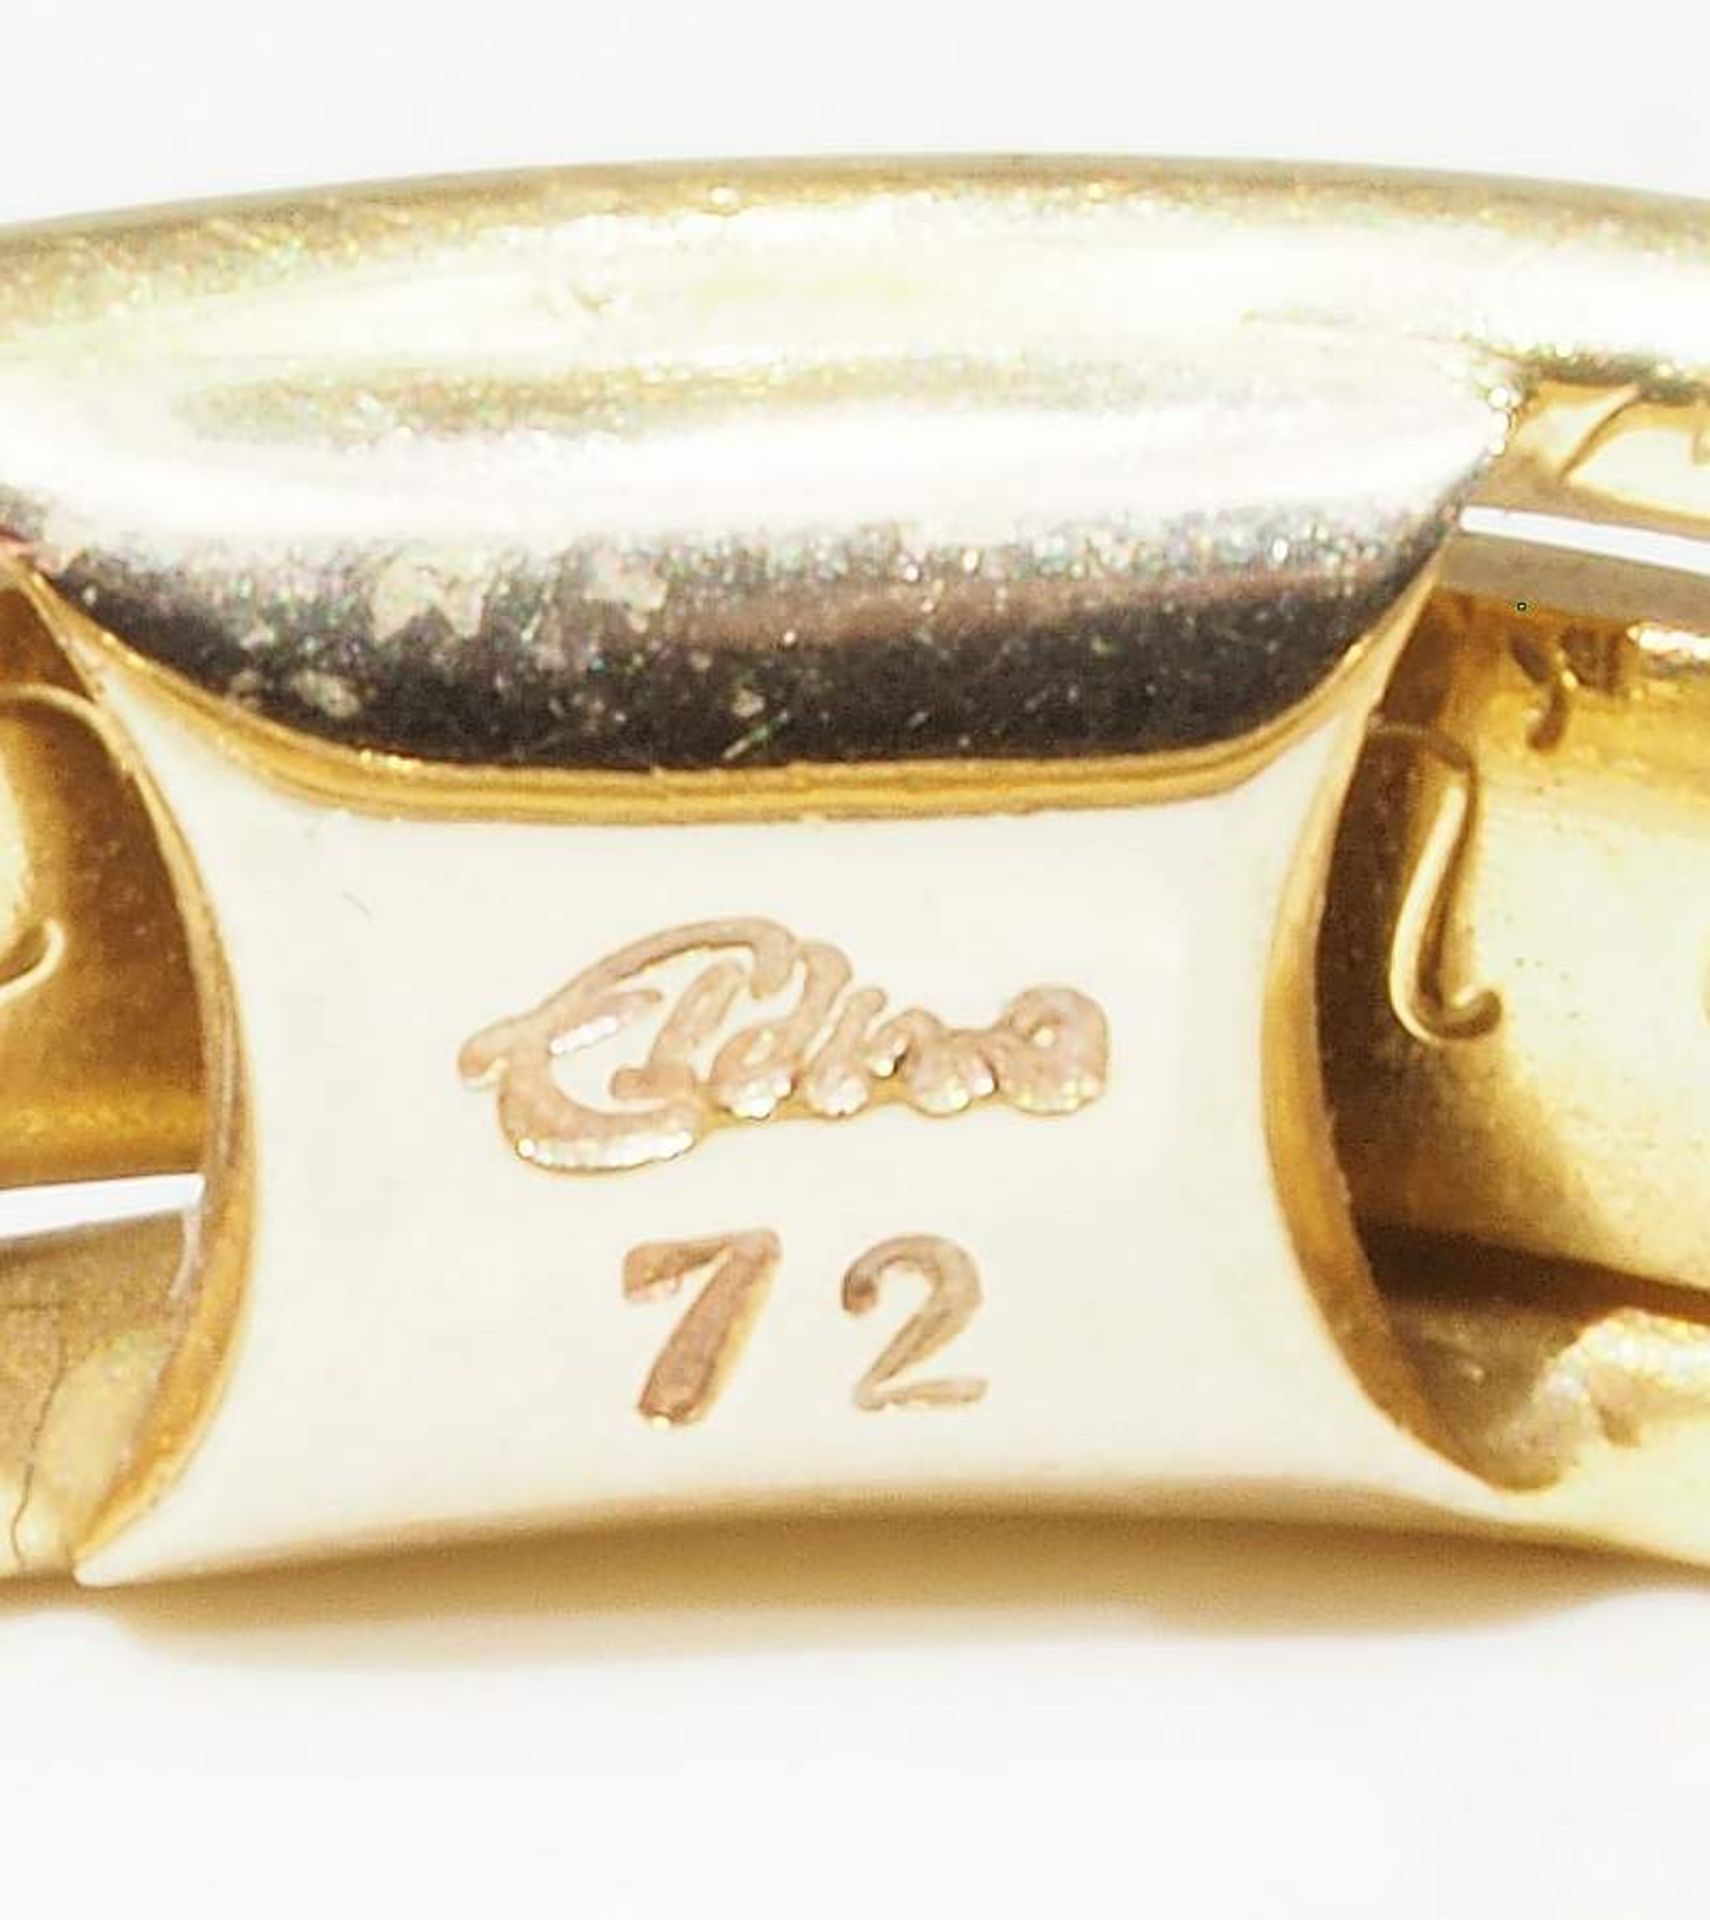 Paar Ringe. Gelb- und Weißgold. 750er Gold mit Innengravur, besetzt mit kleinen Diamanten. - Image 6 of 7